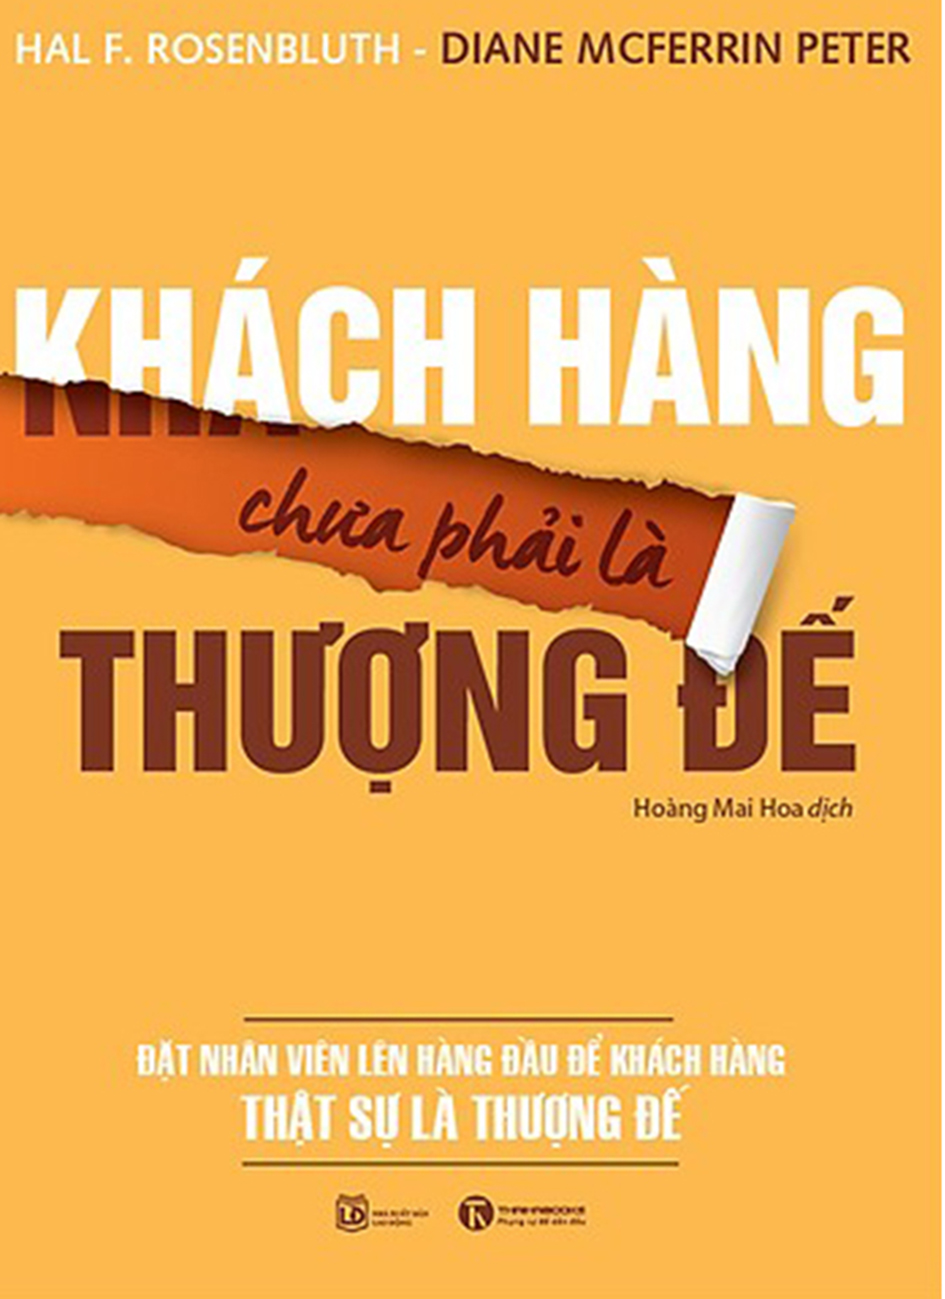 khach hang chua phai thuong